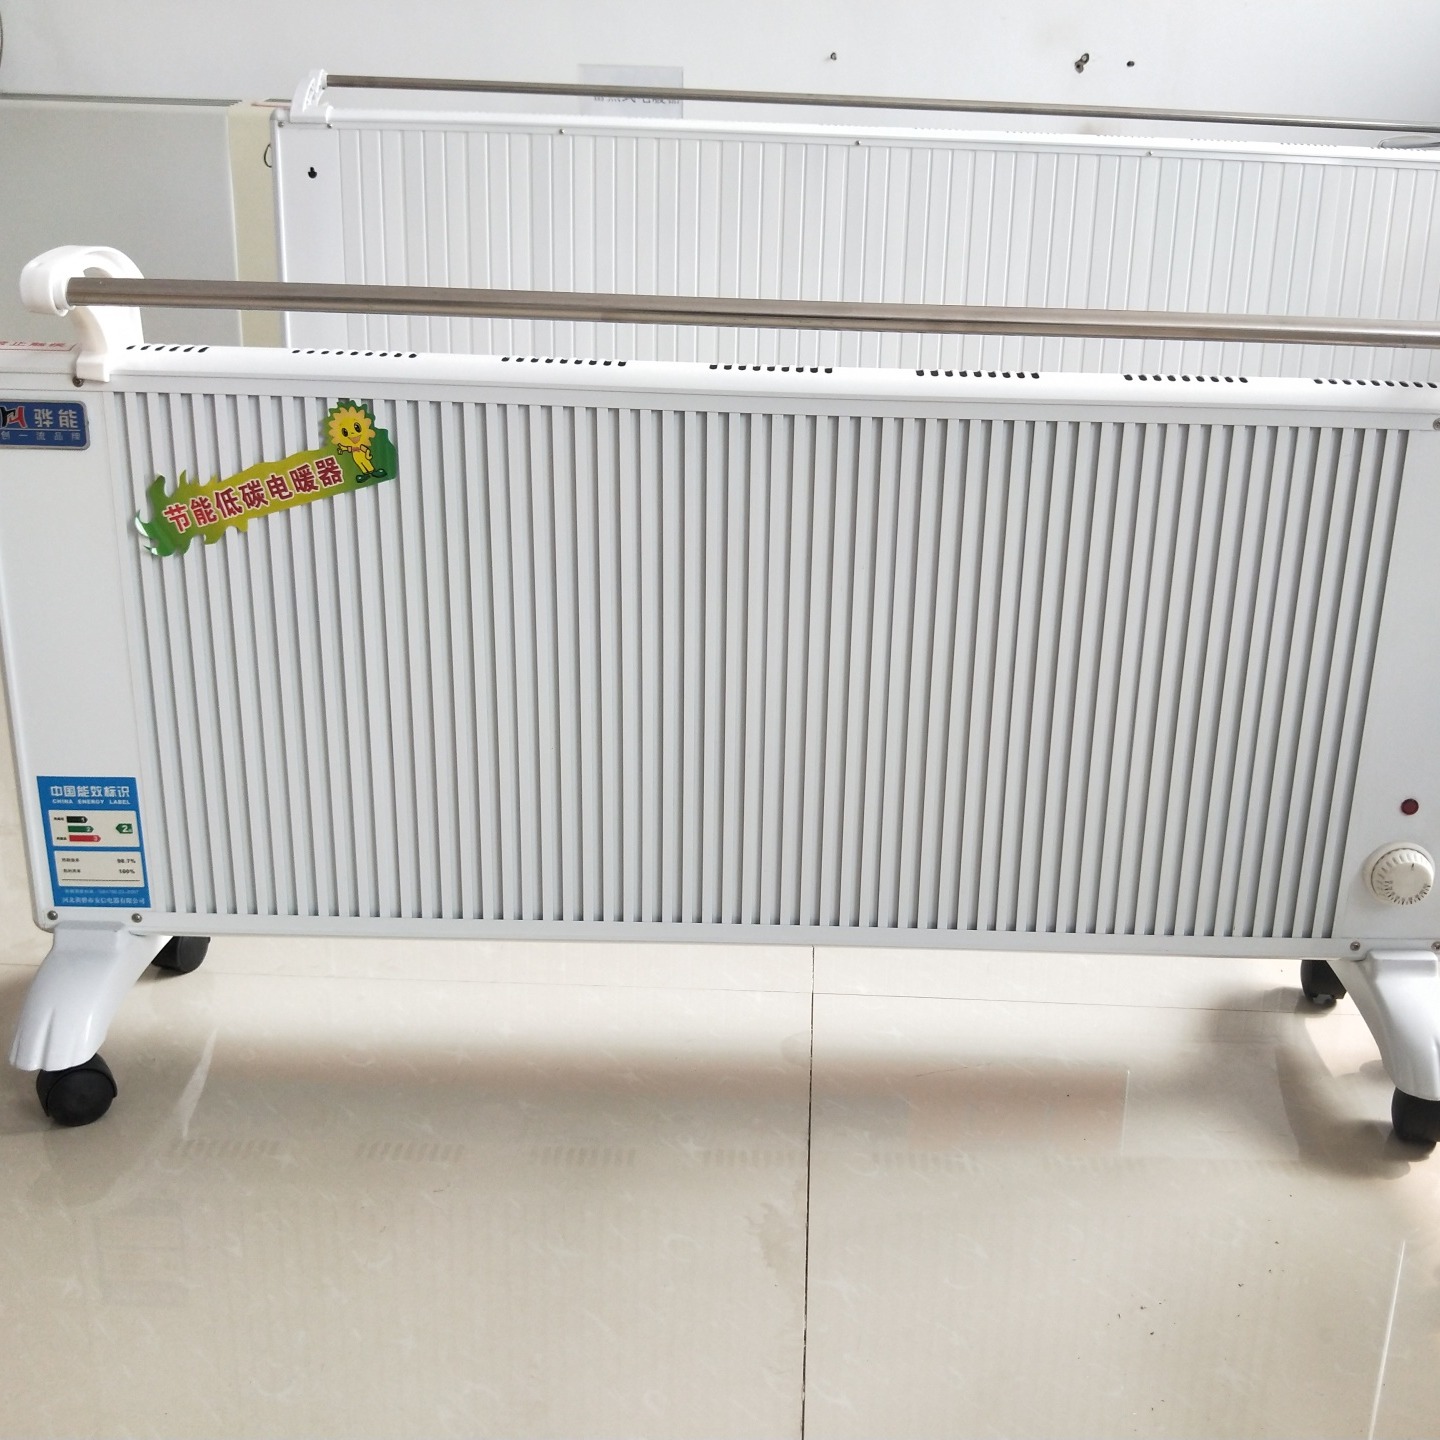 鑫达美裕供应生产 GRTJ-2000电暖器 电加热暖气片 家用电注水电暖器片 生产供应图片